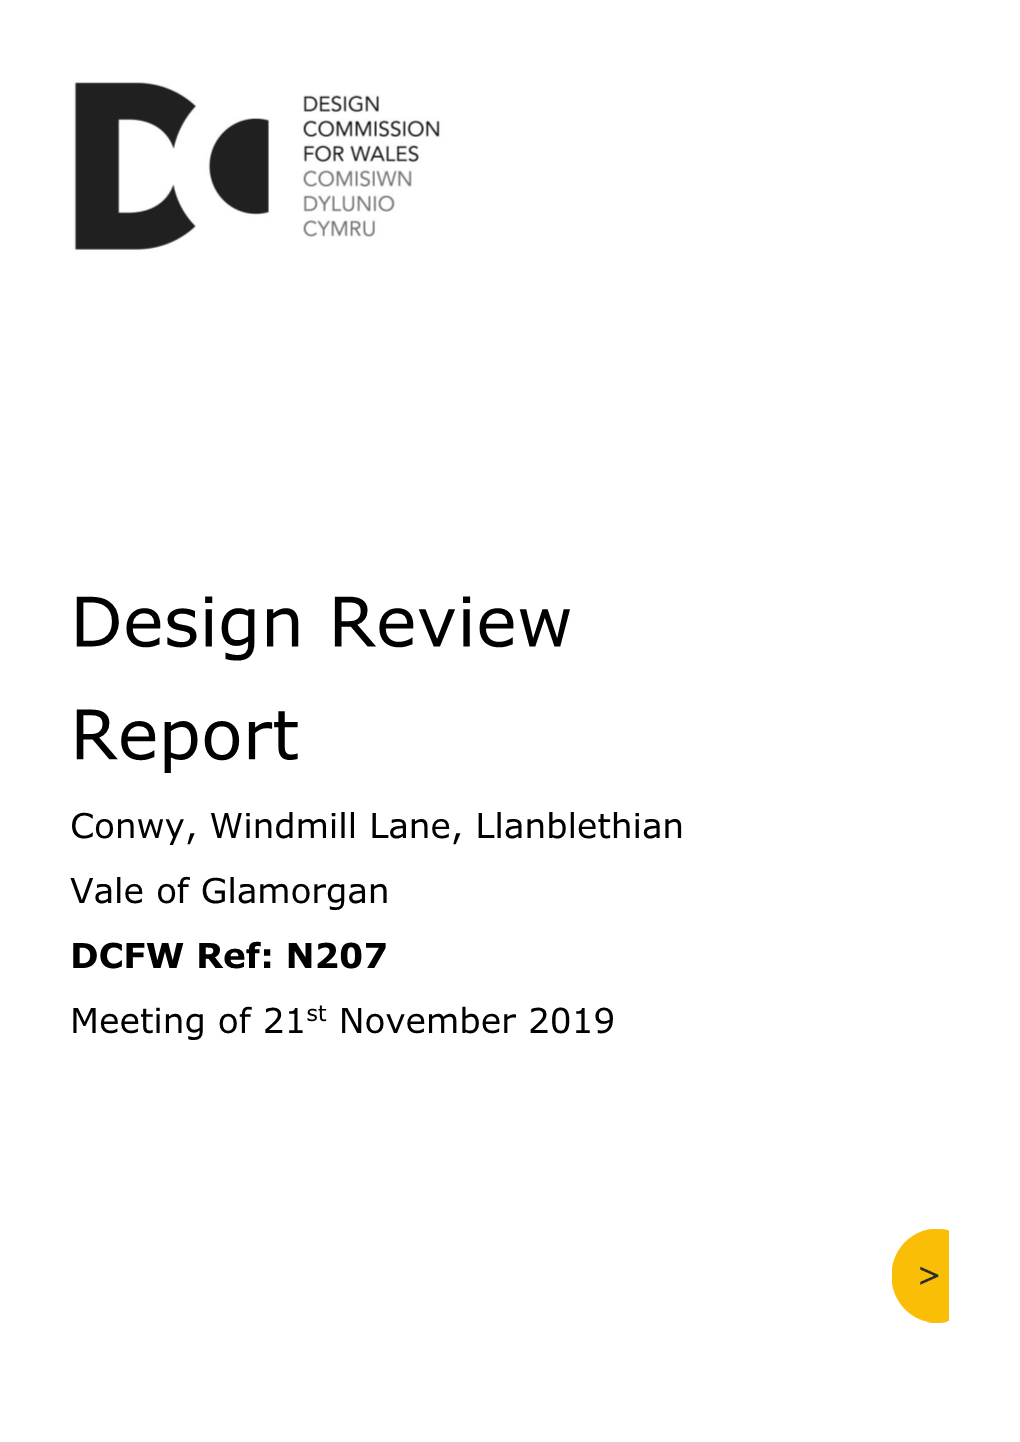 207-Conwy-Llanblethian-DR-Report